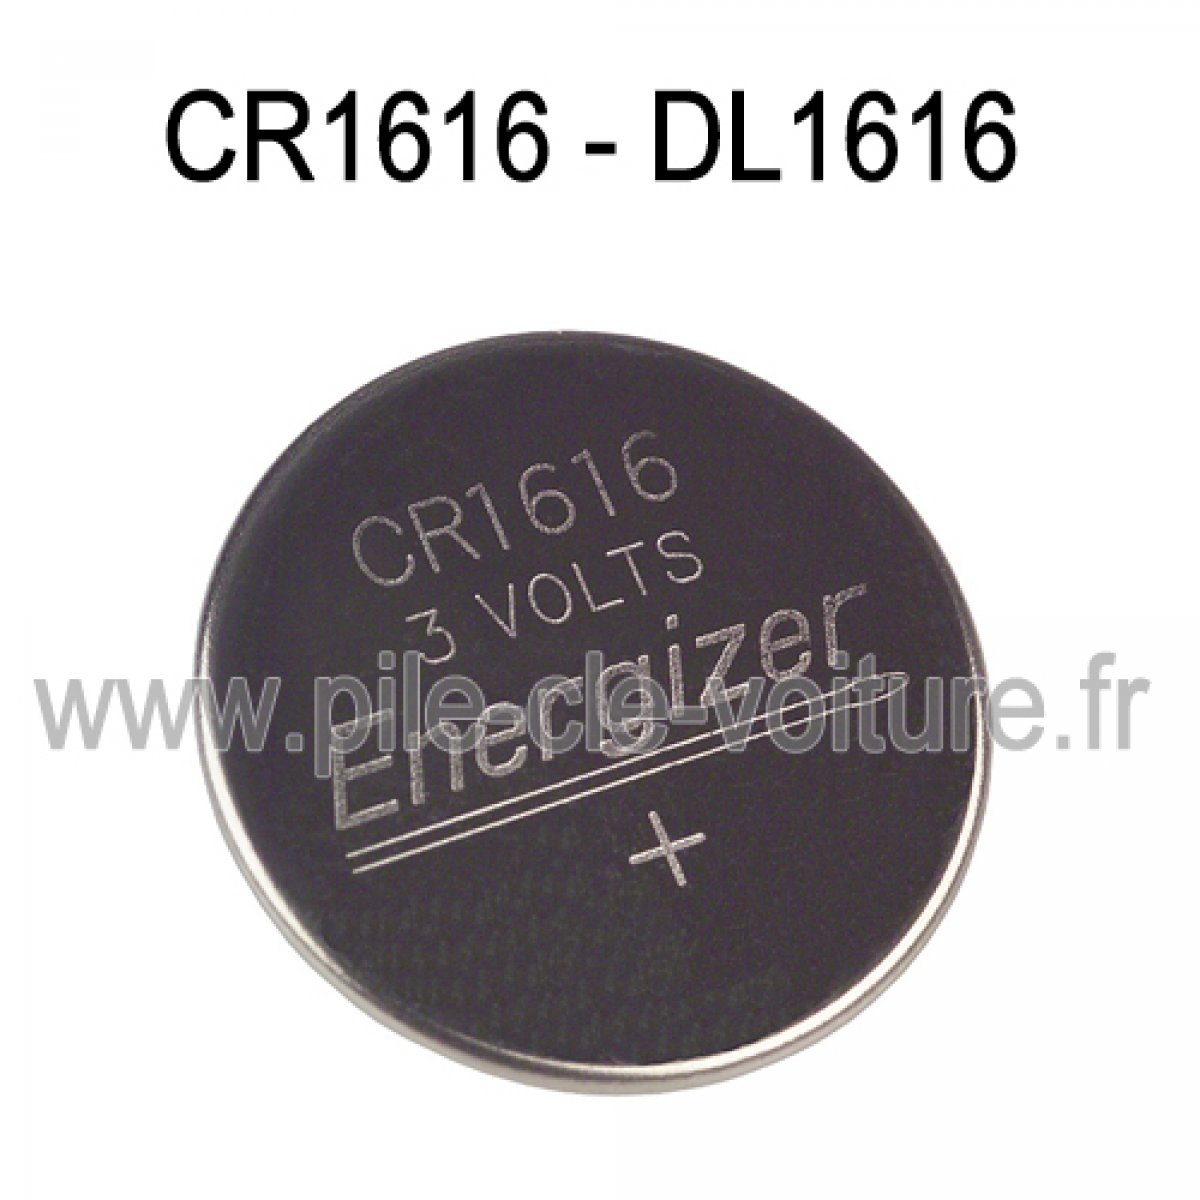 CR1616 - Pile pour clé / télécommande CR1616 Lithium 3V